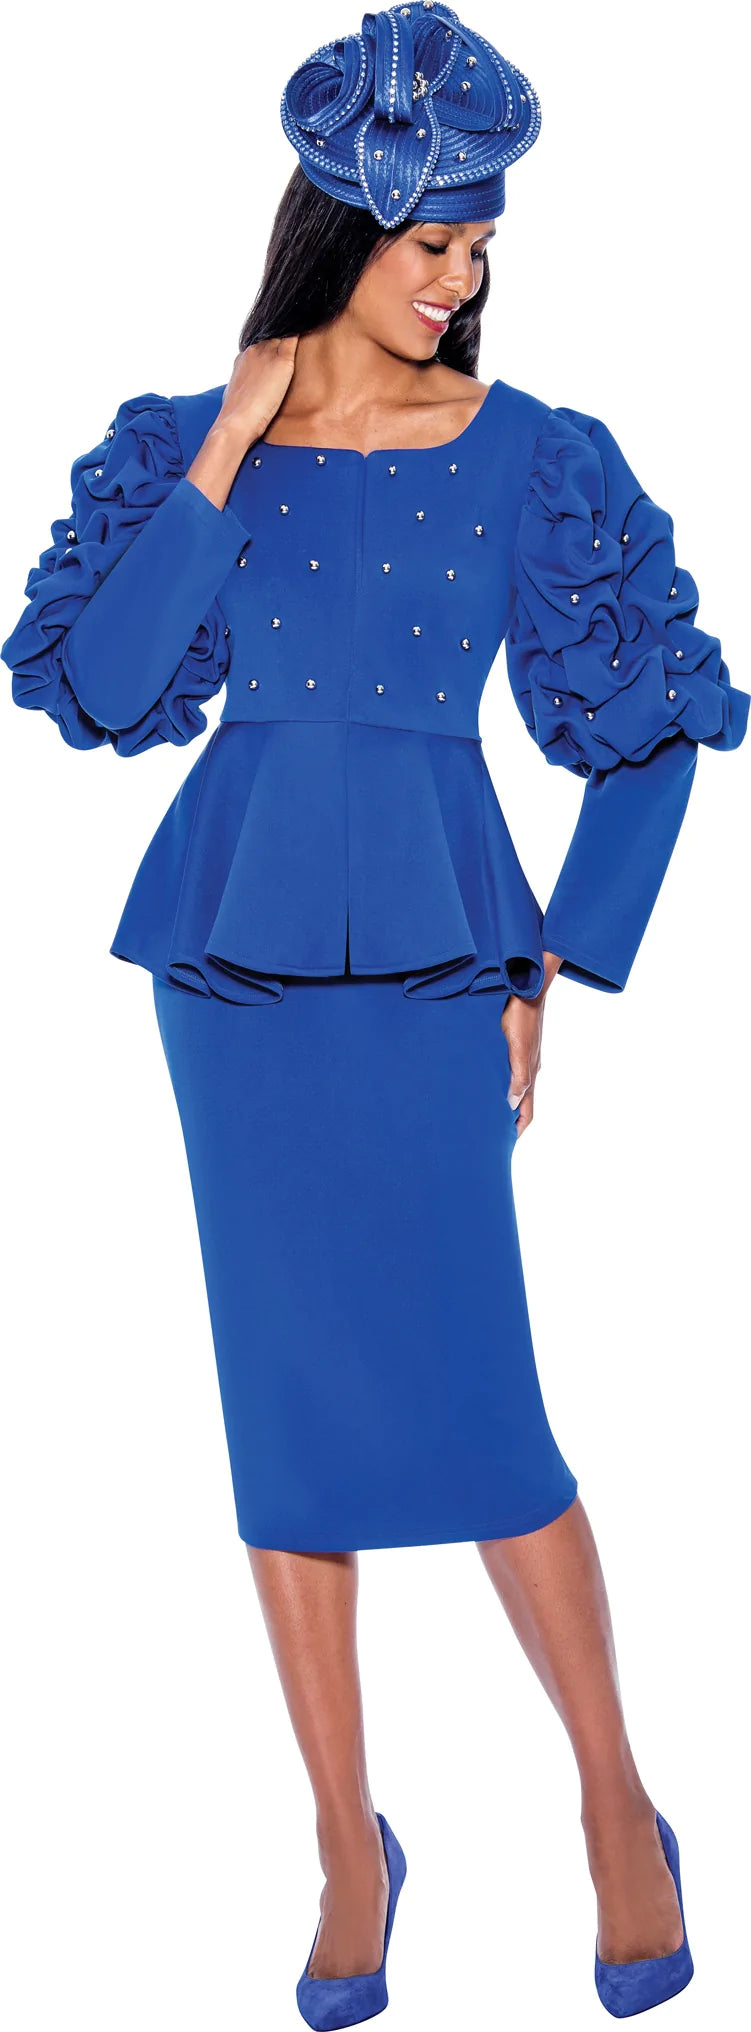 GMI Church Suit 9252C-Royal Blue - Church Suits For Less